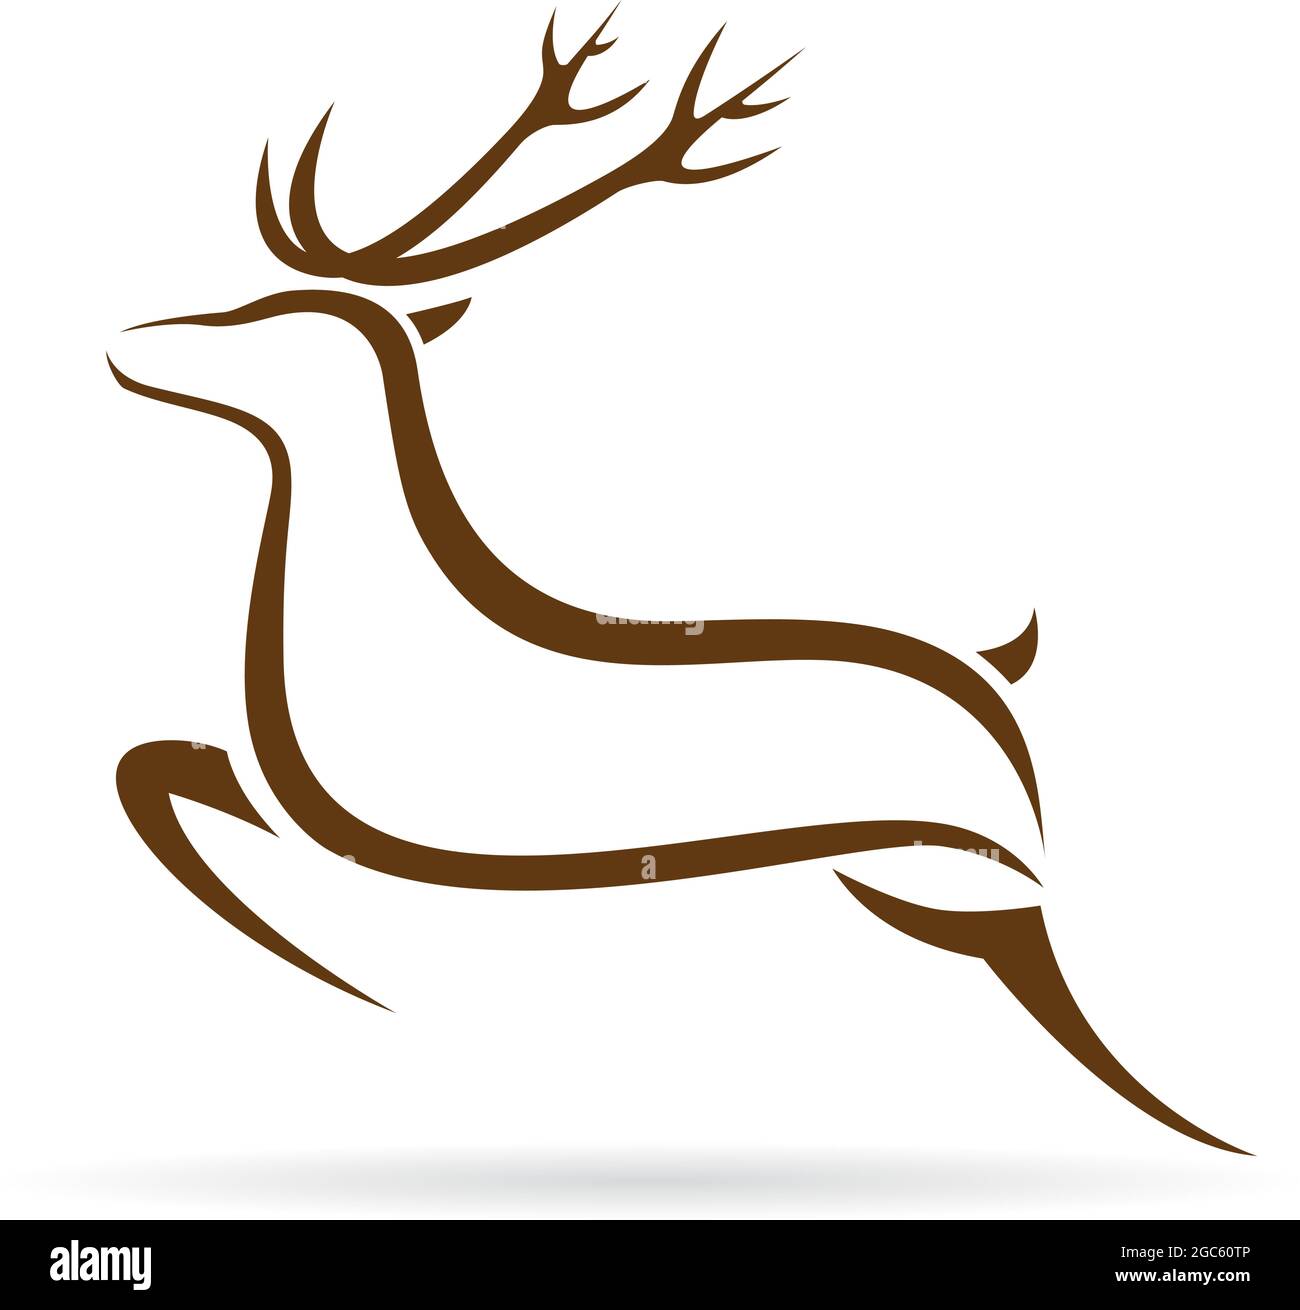 Illustrazione vettoriale del simbolo del cervo - tatuaggio Illustrazione Vettoriale